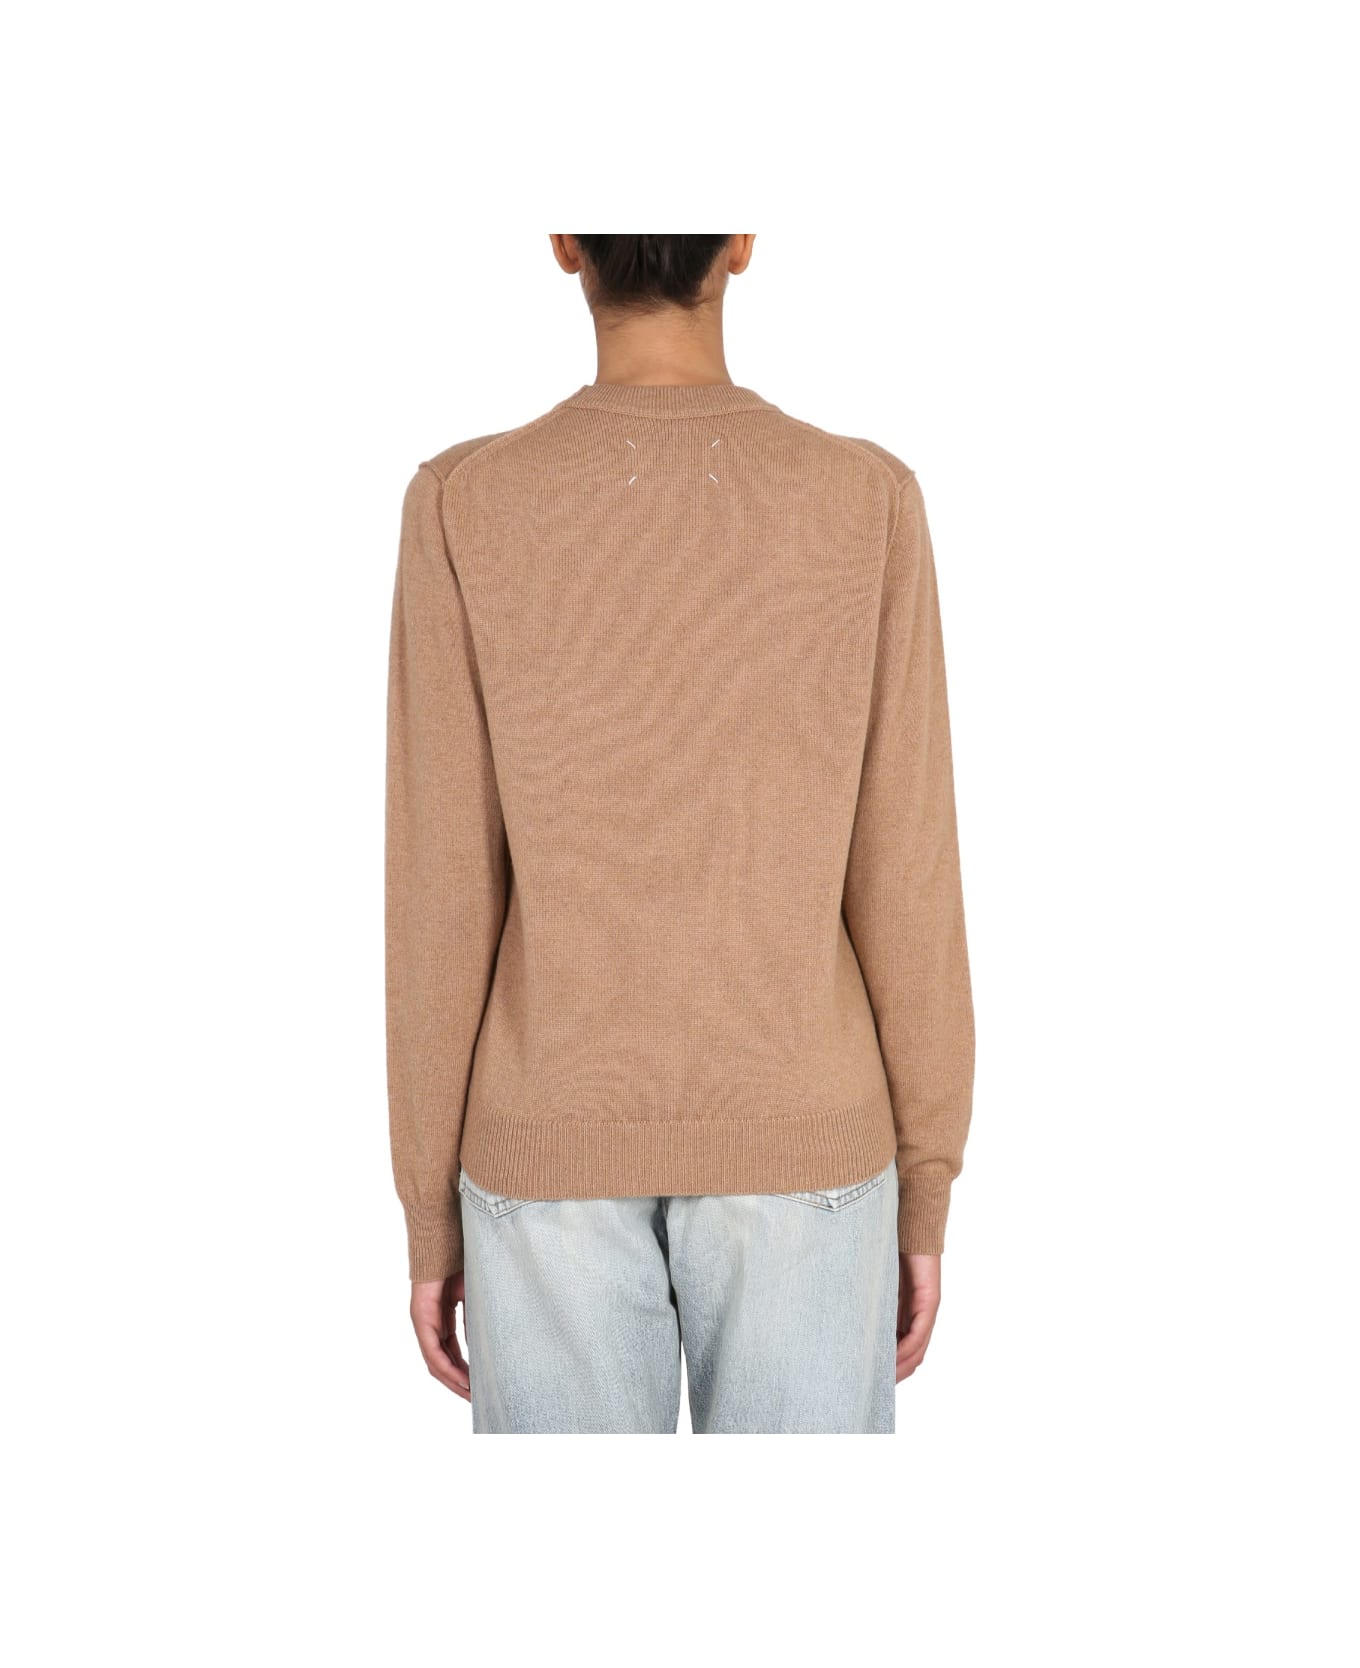 Maison Margiela Cashmere Sweater - BEIGE ニットウェア